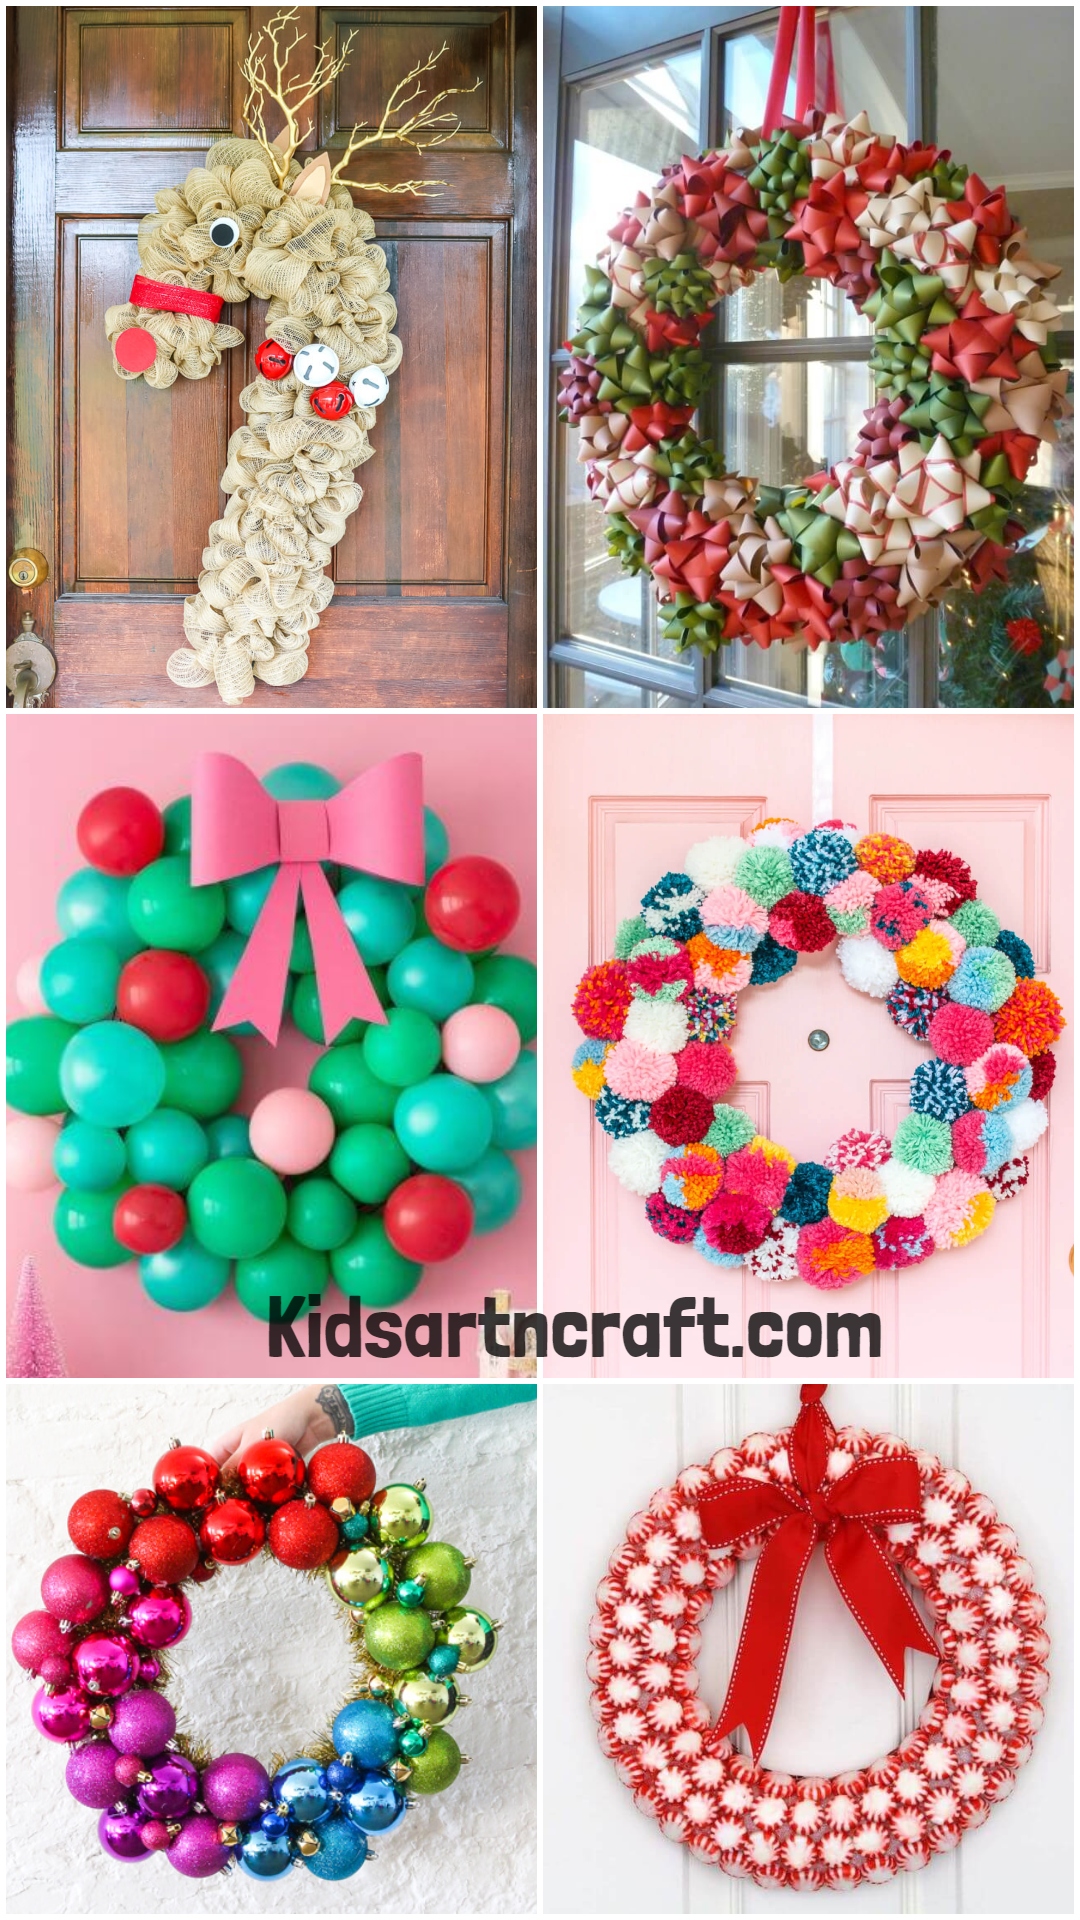 DIY Christmas Wreath Ideas